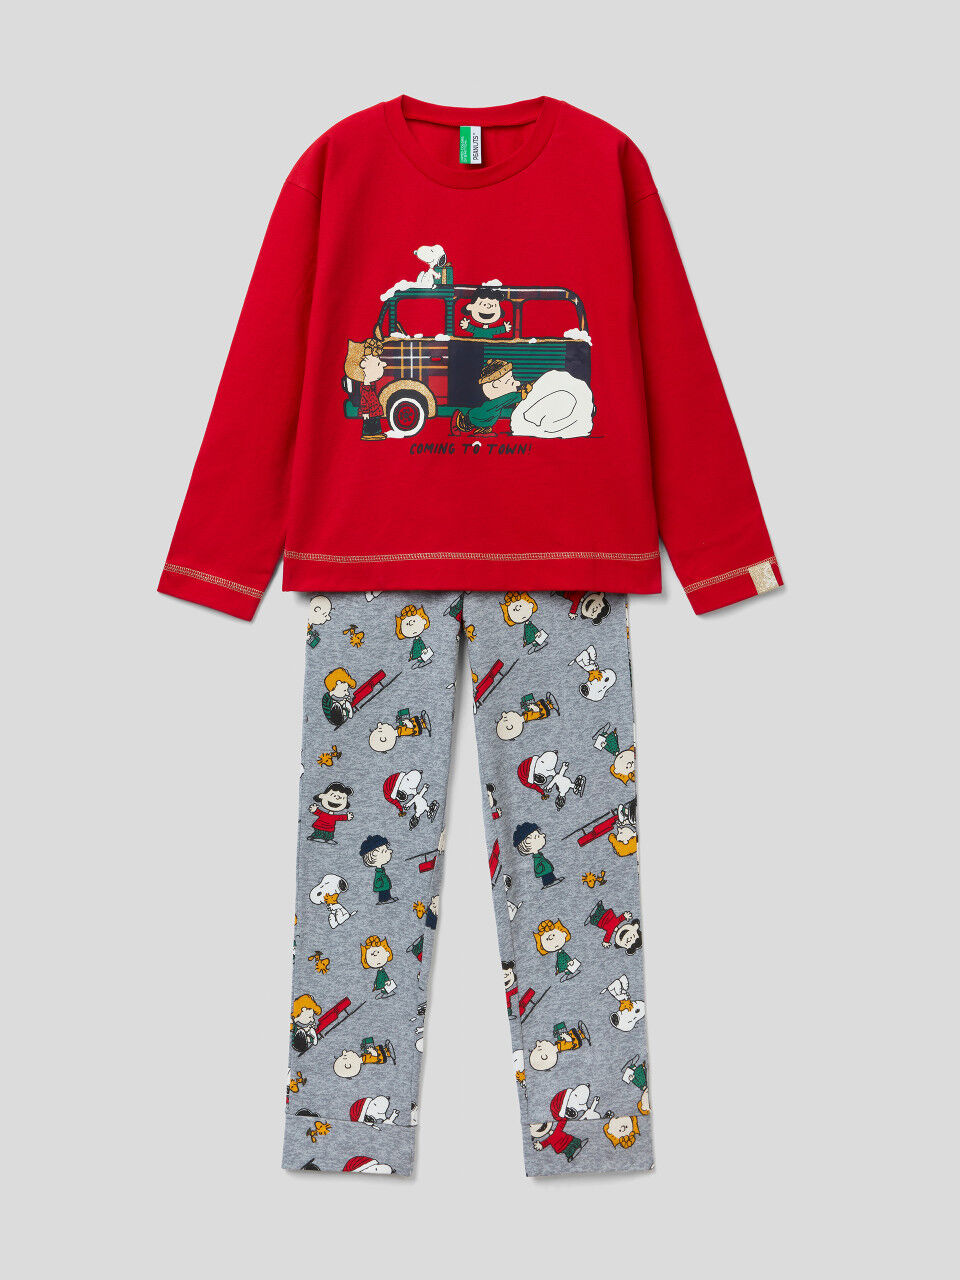 Pijama navideño de Snoopy